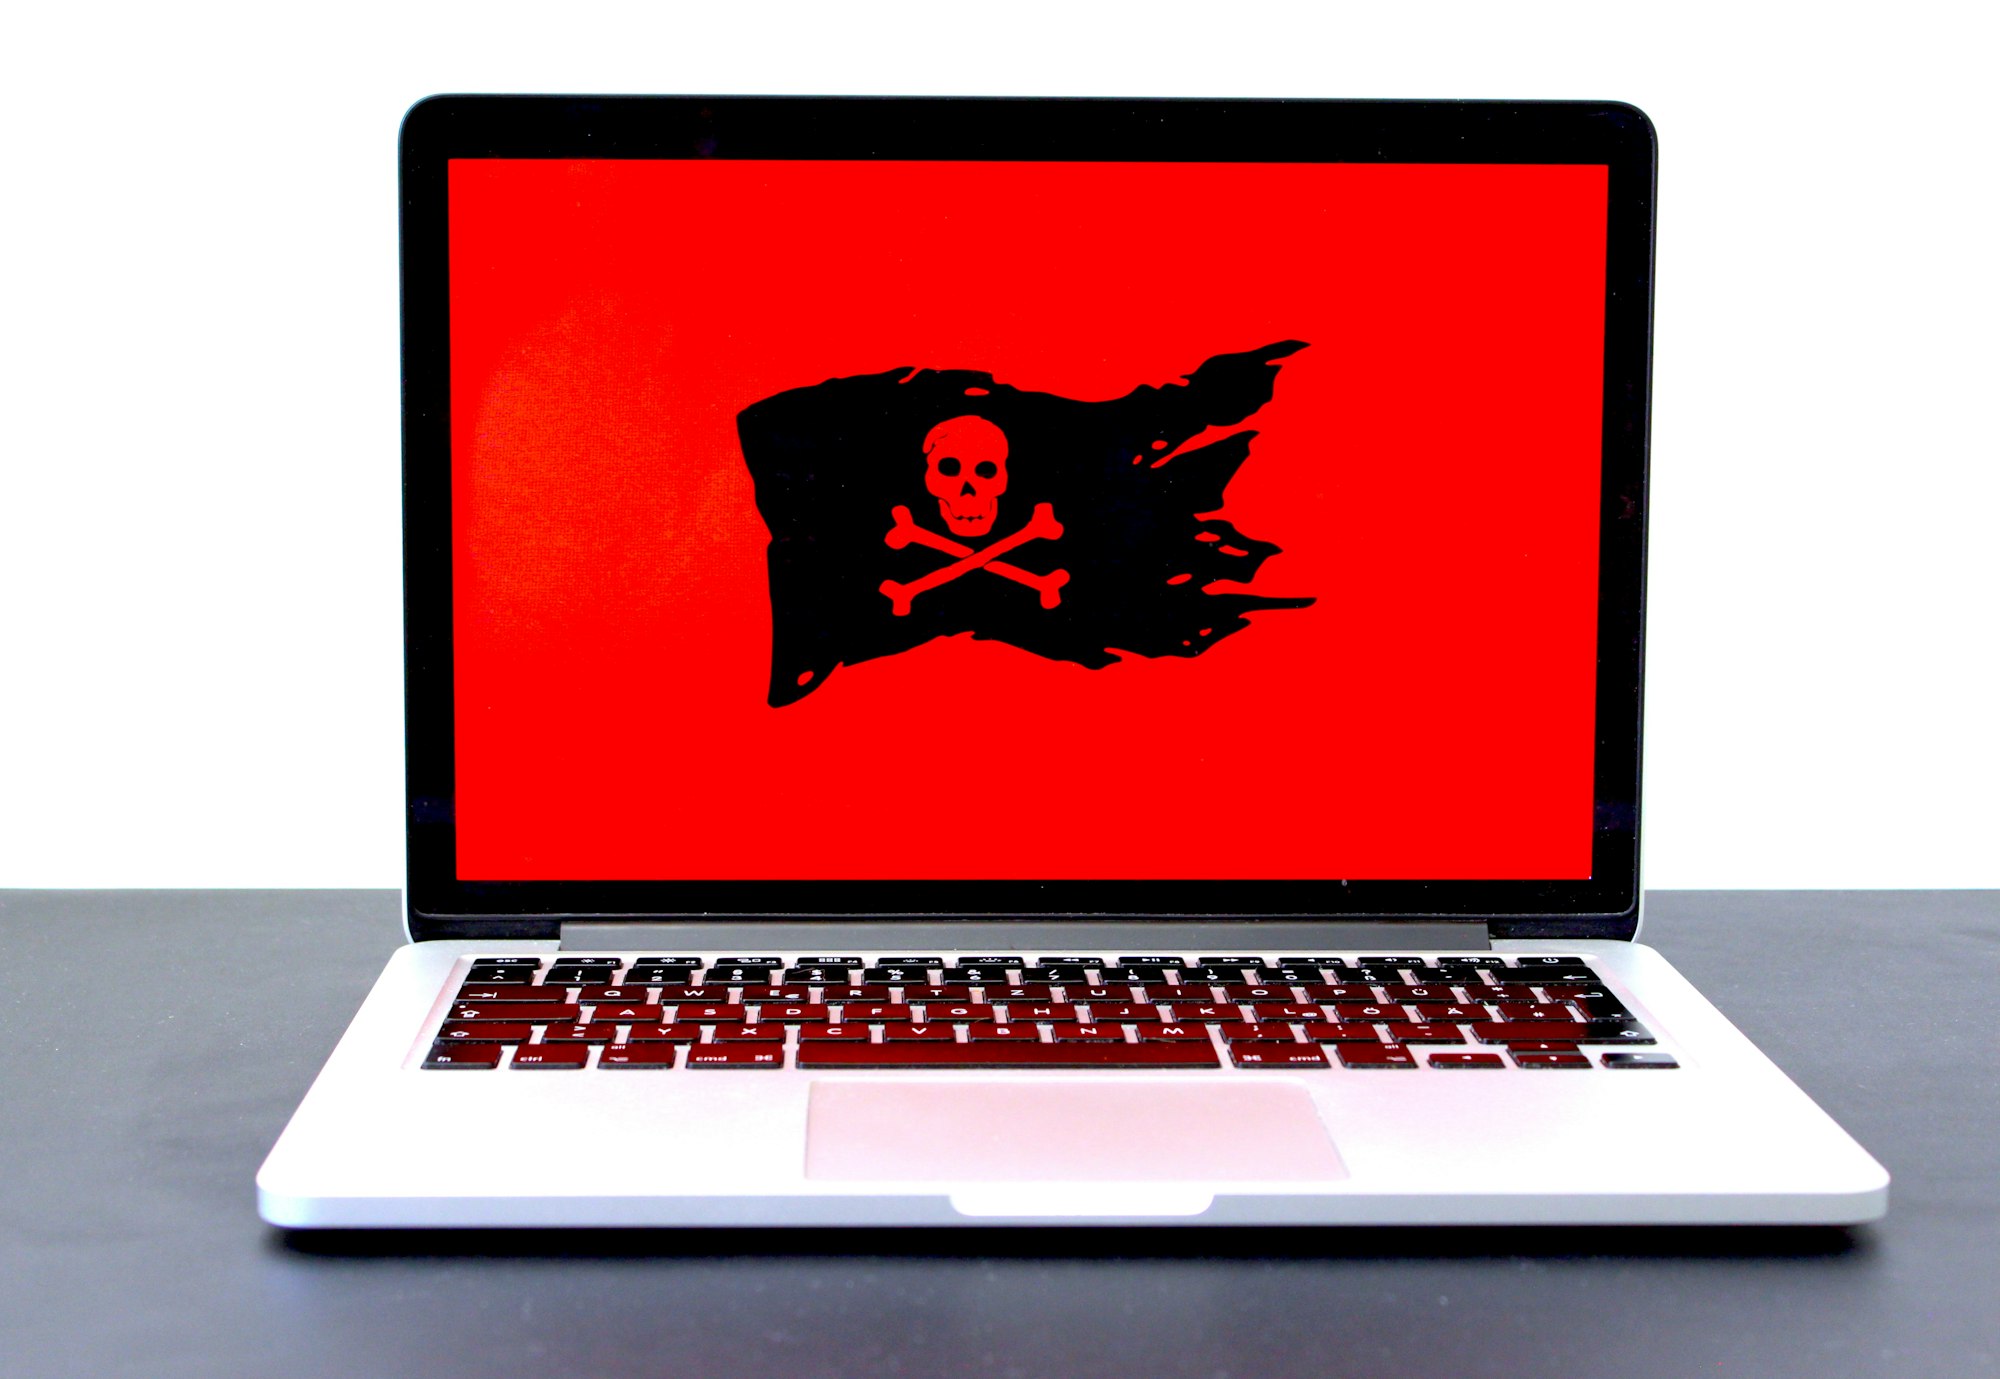 Исследователи обнаружили новое шпионское ПО SysJoker нацеленное на пользователей Windows, macOS и Linux